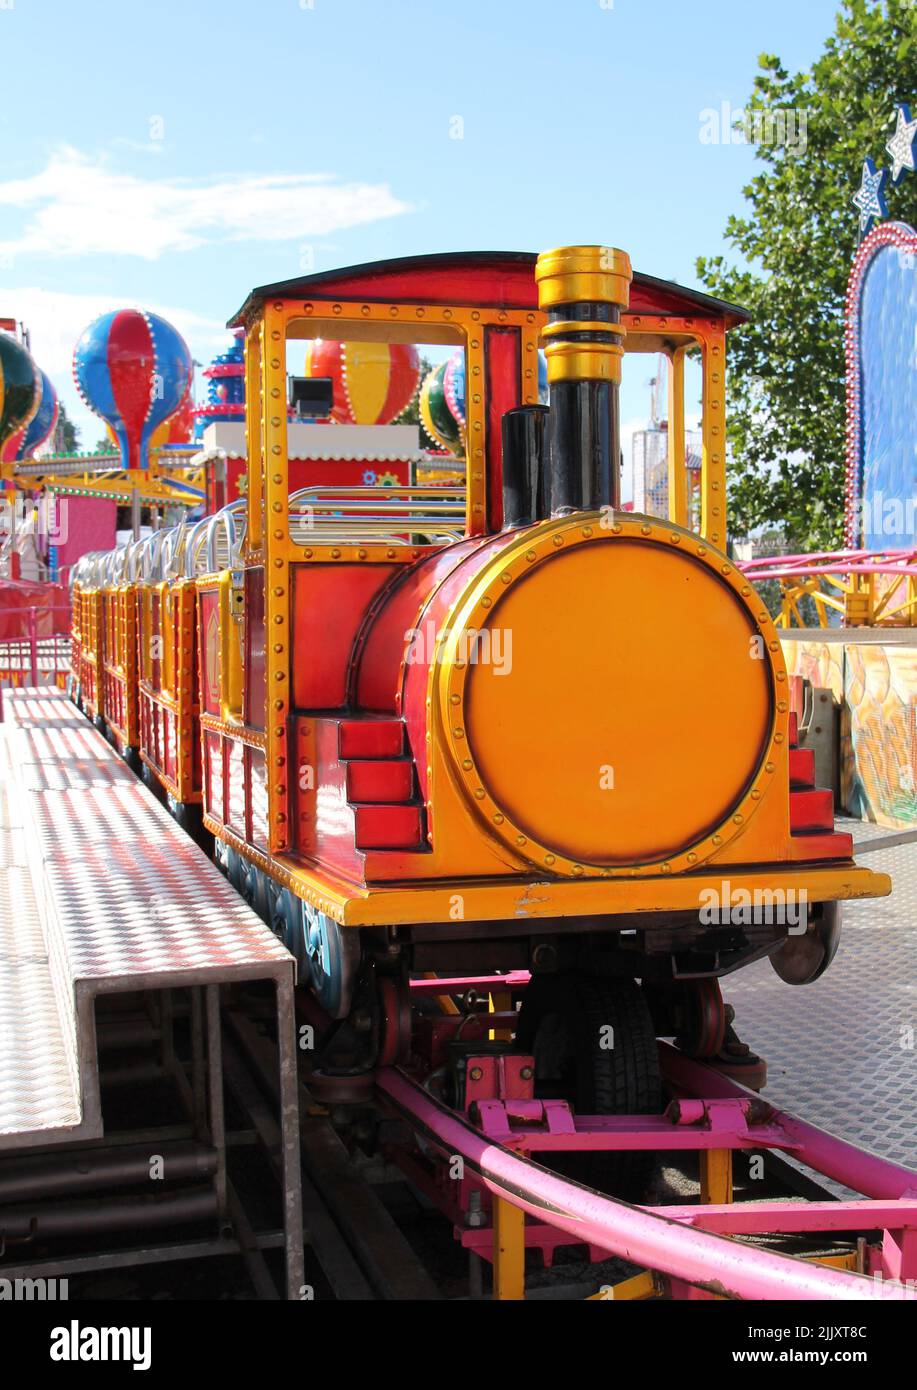 A Childrens Train Ride at a Fun Fair. Stock Photo